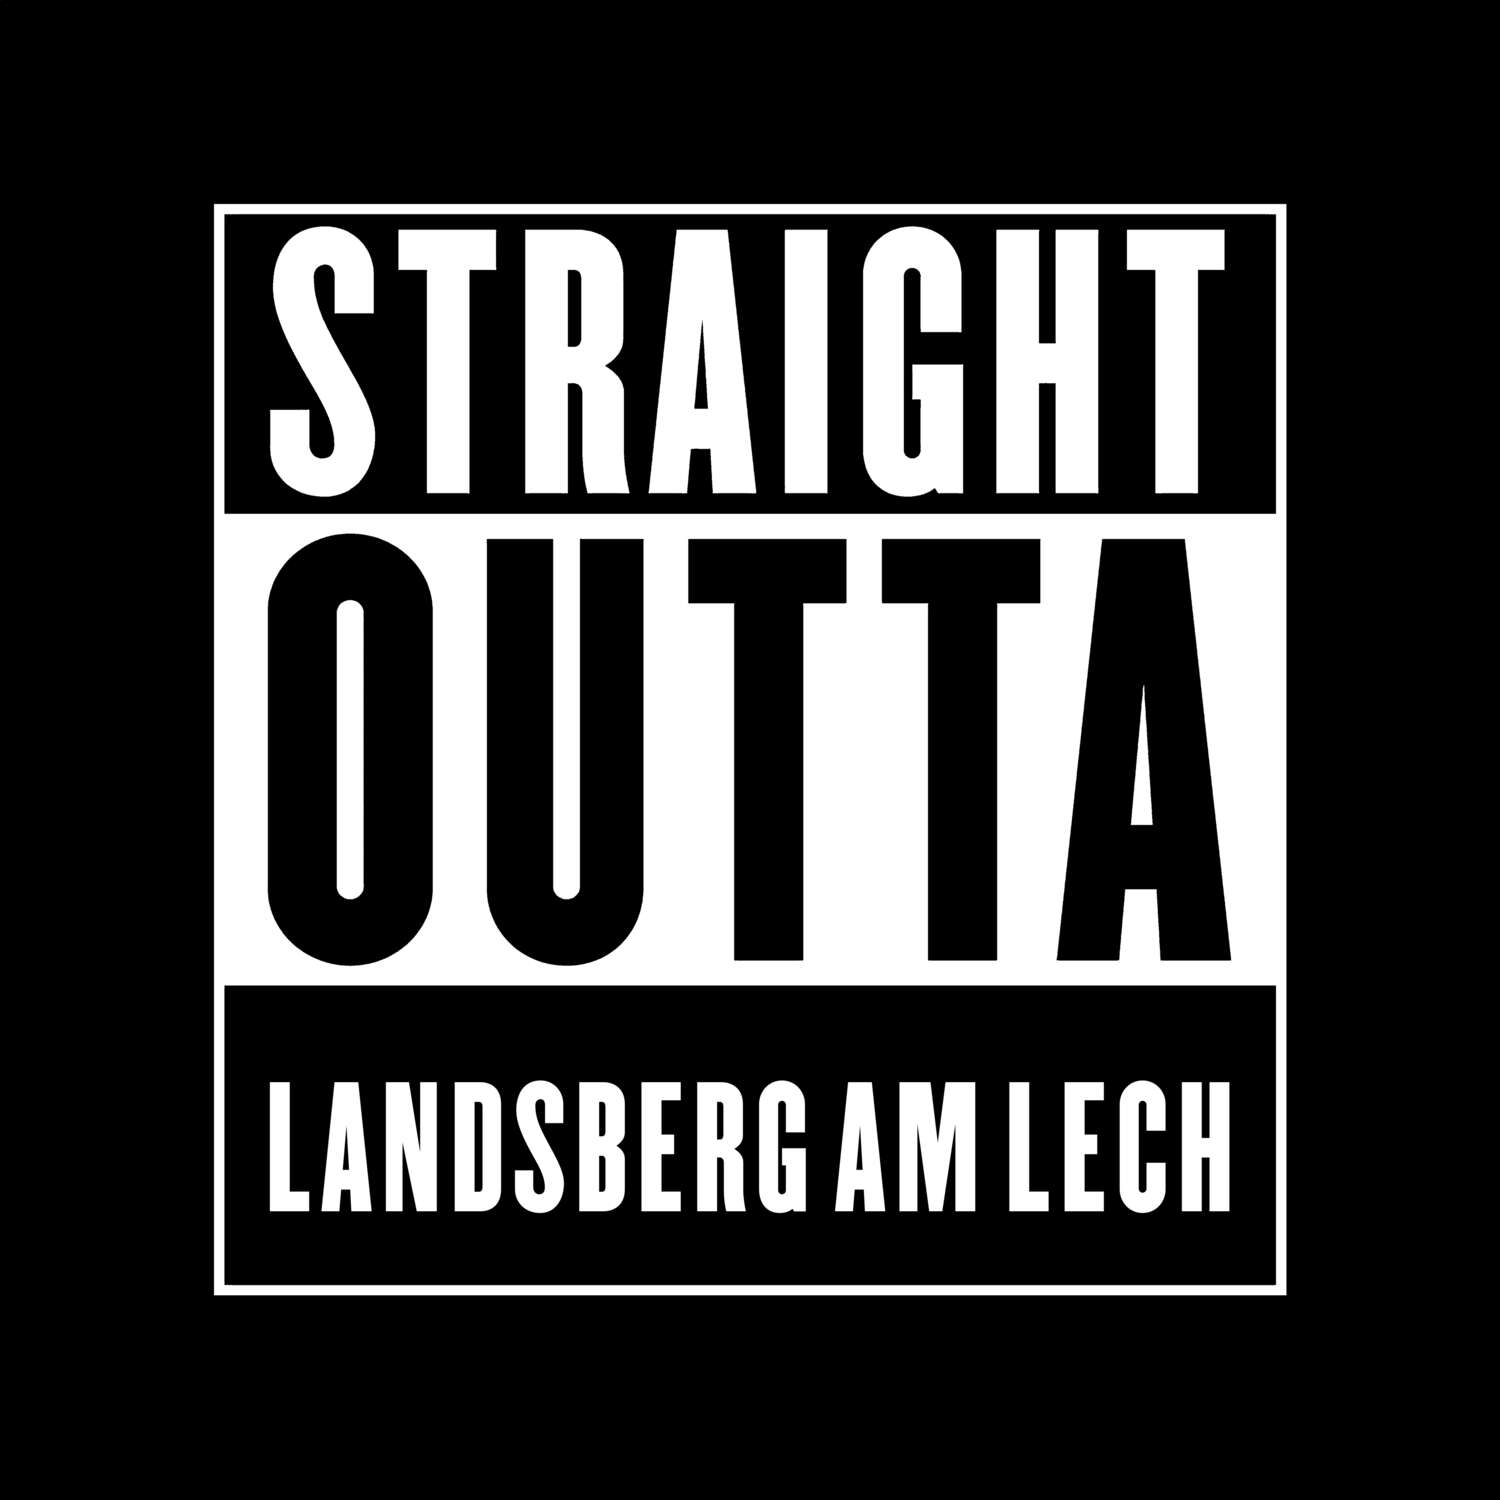 Landsberg am Lech T-Shirt »Straight Outta«